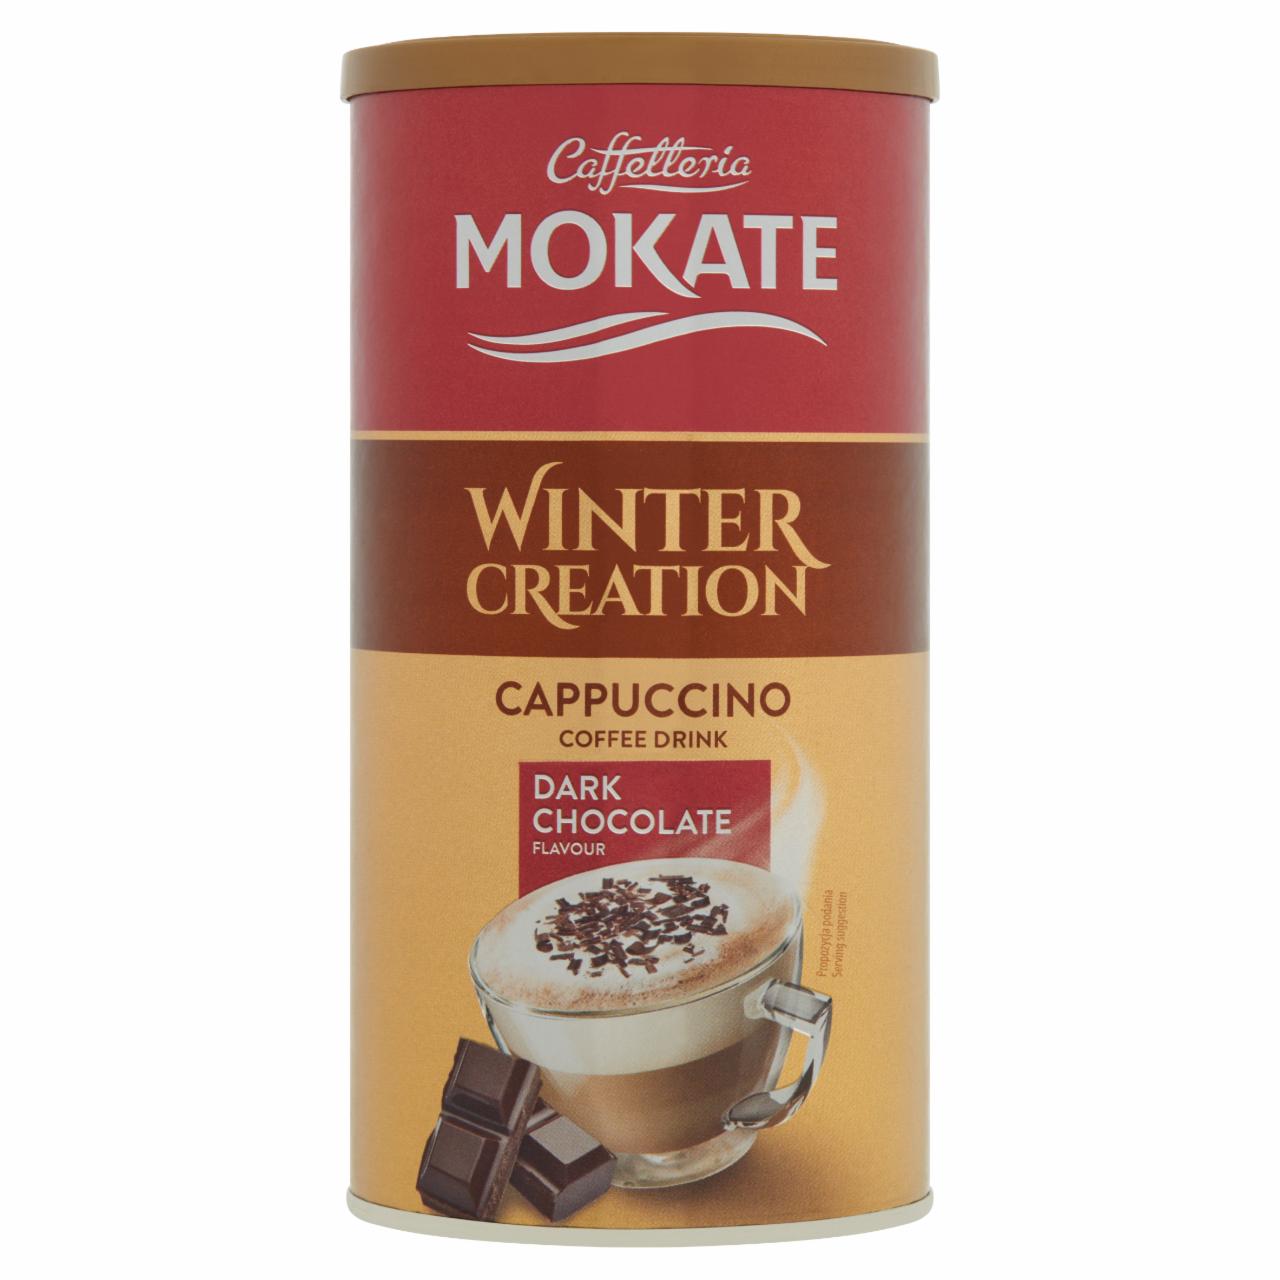 Képek - Mokate Winter Creation Cappuccino étcsokoládé ízű kávéitalpor 150 g